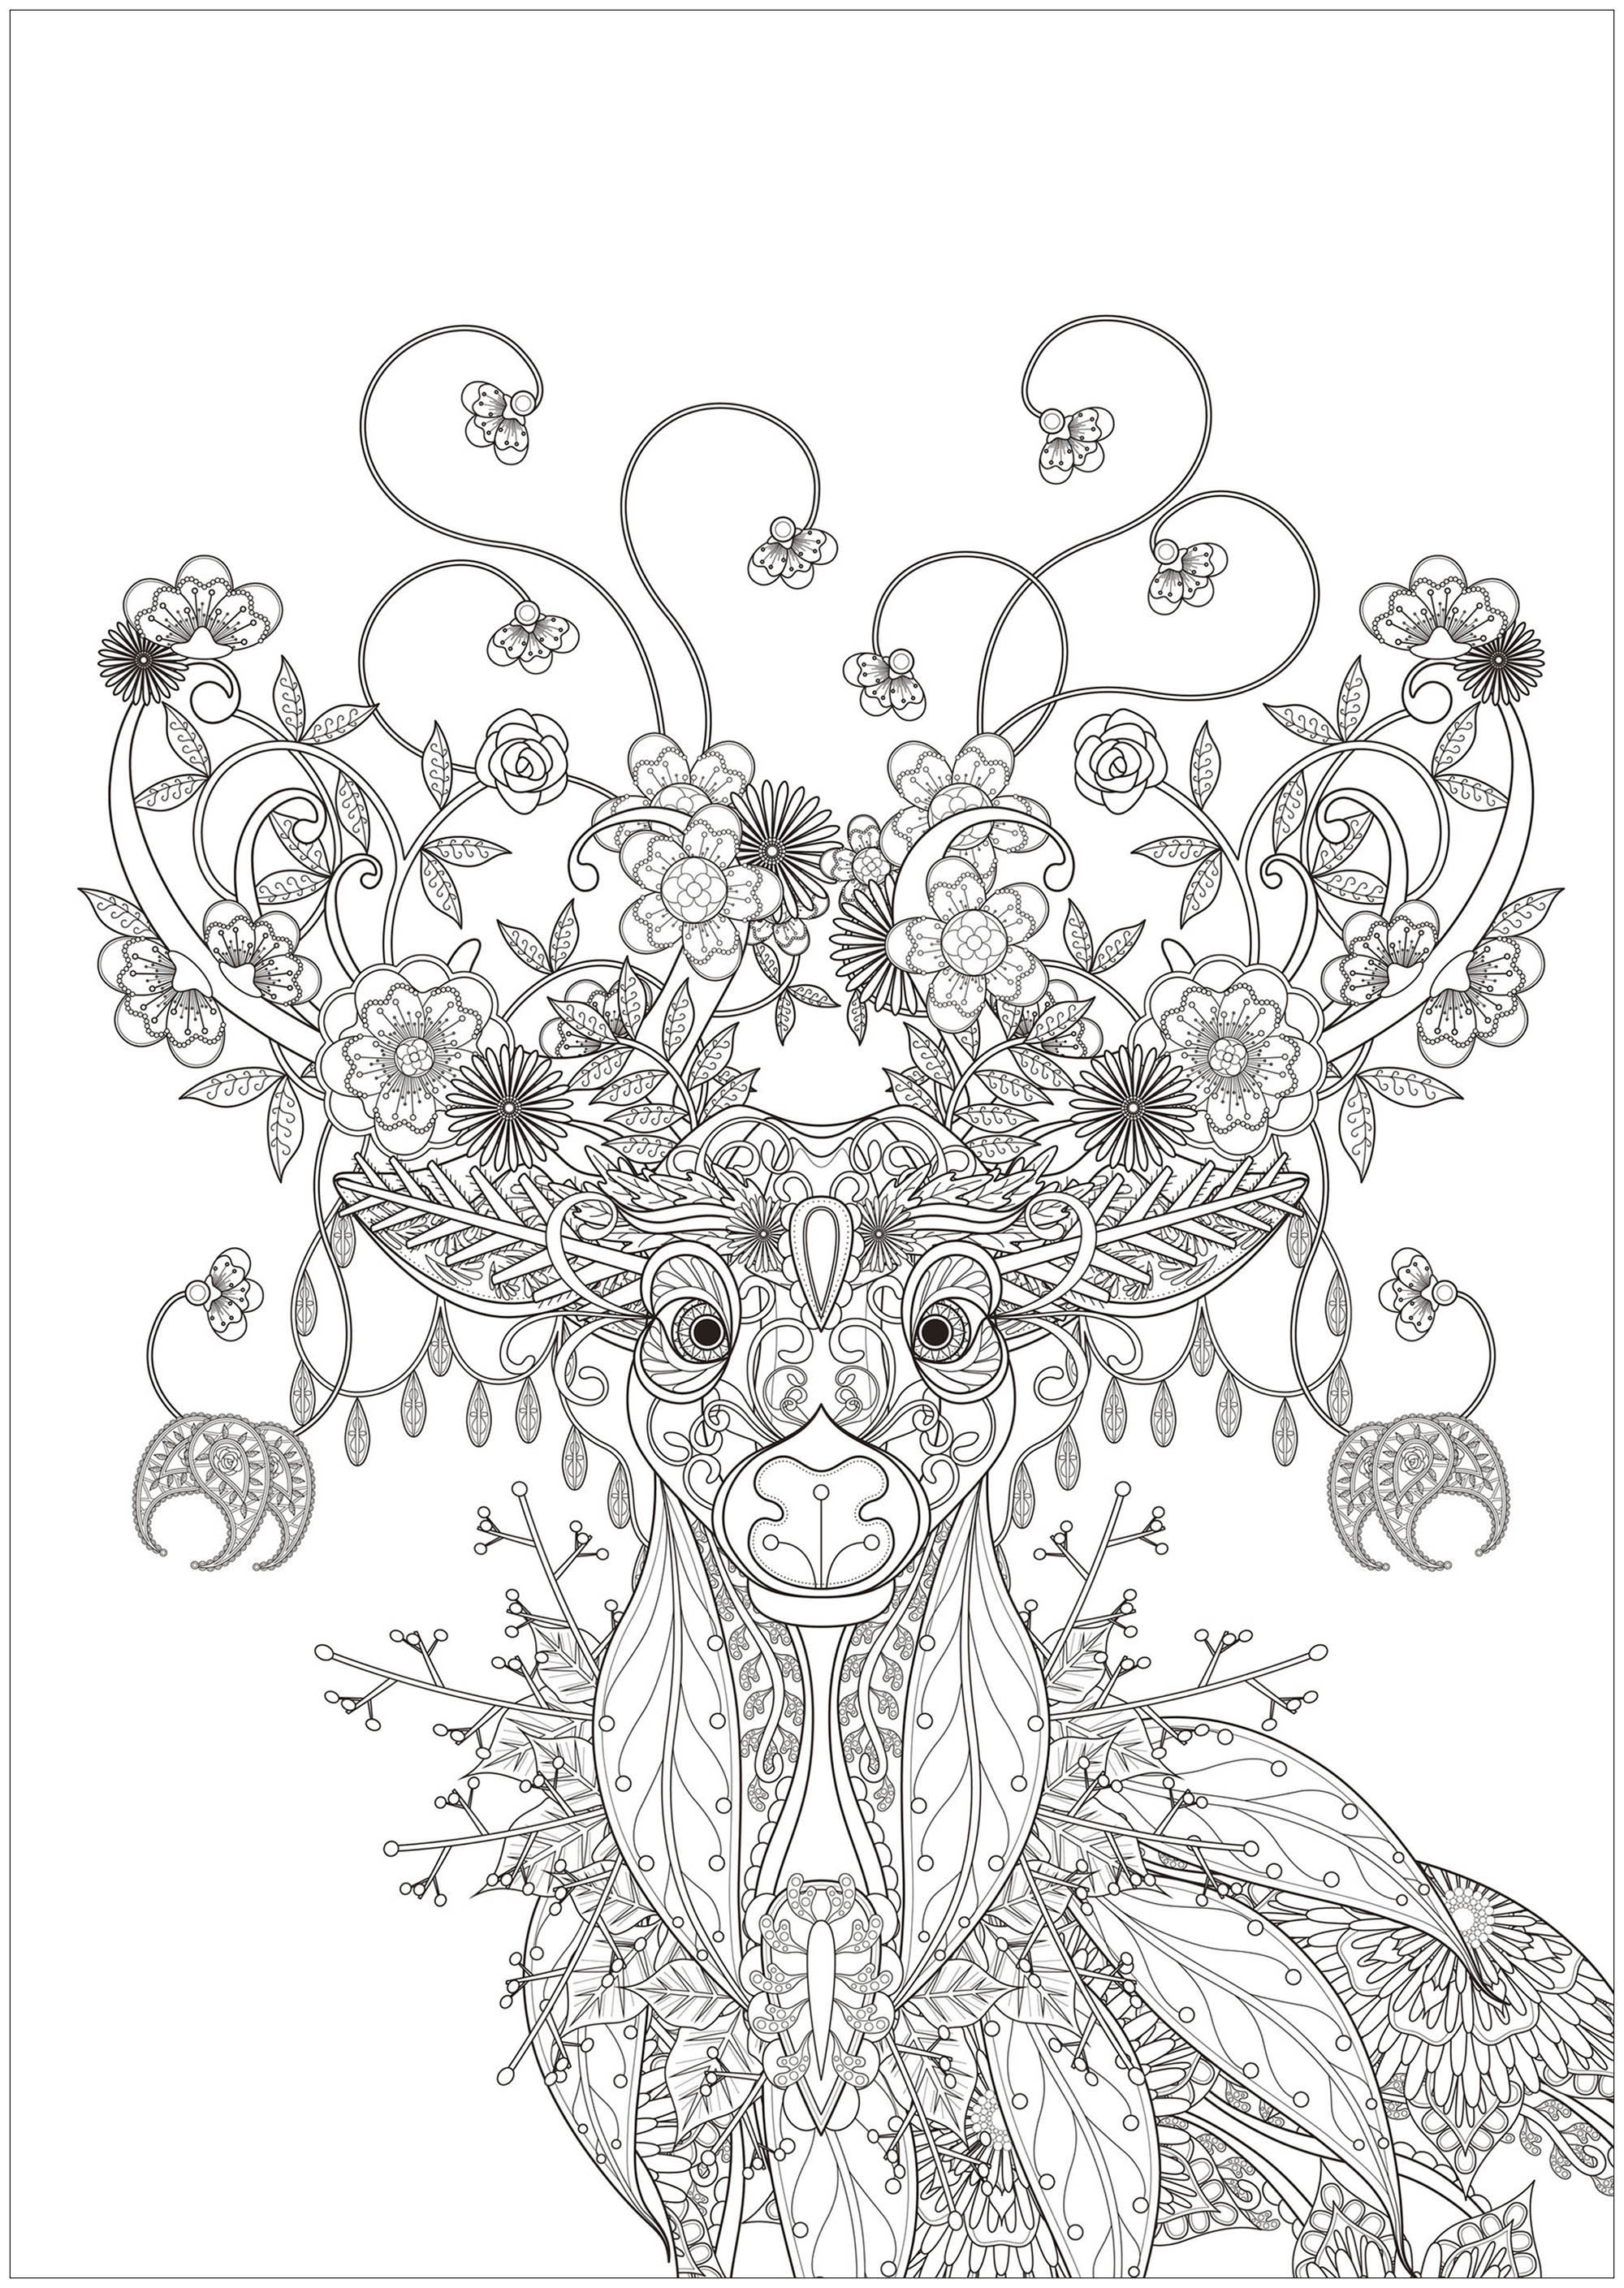 Magnifico Cervo disegnato con elementi ispirati alla natura: fiori, foglie, rami di alberi .., Fonte : 123rf   Artista : Kchung